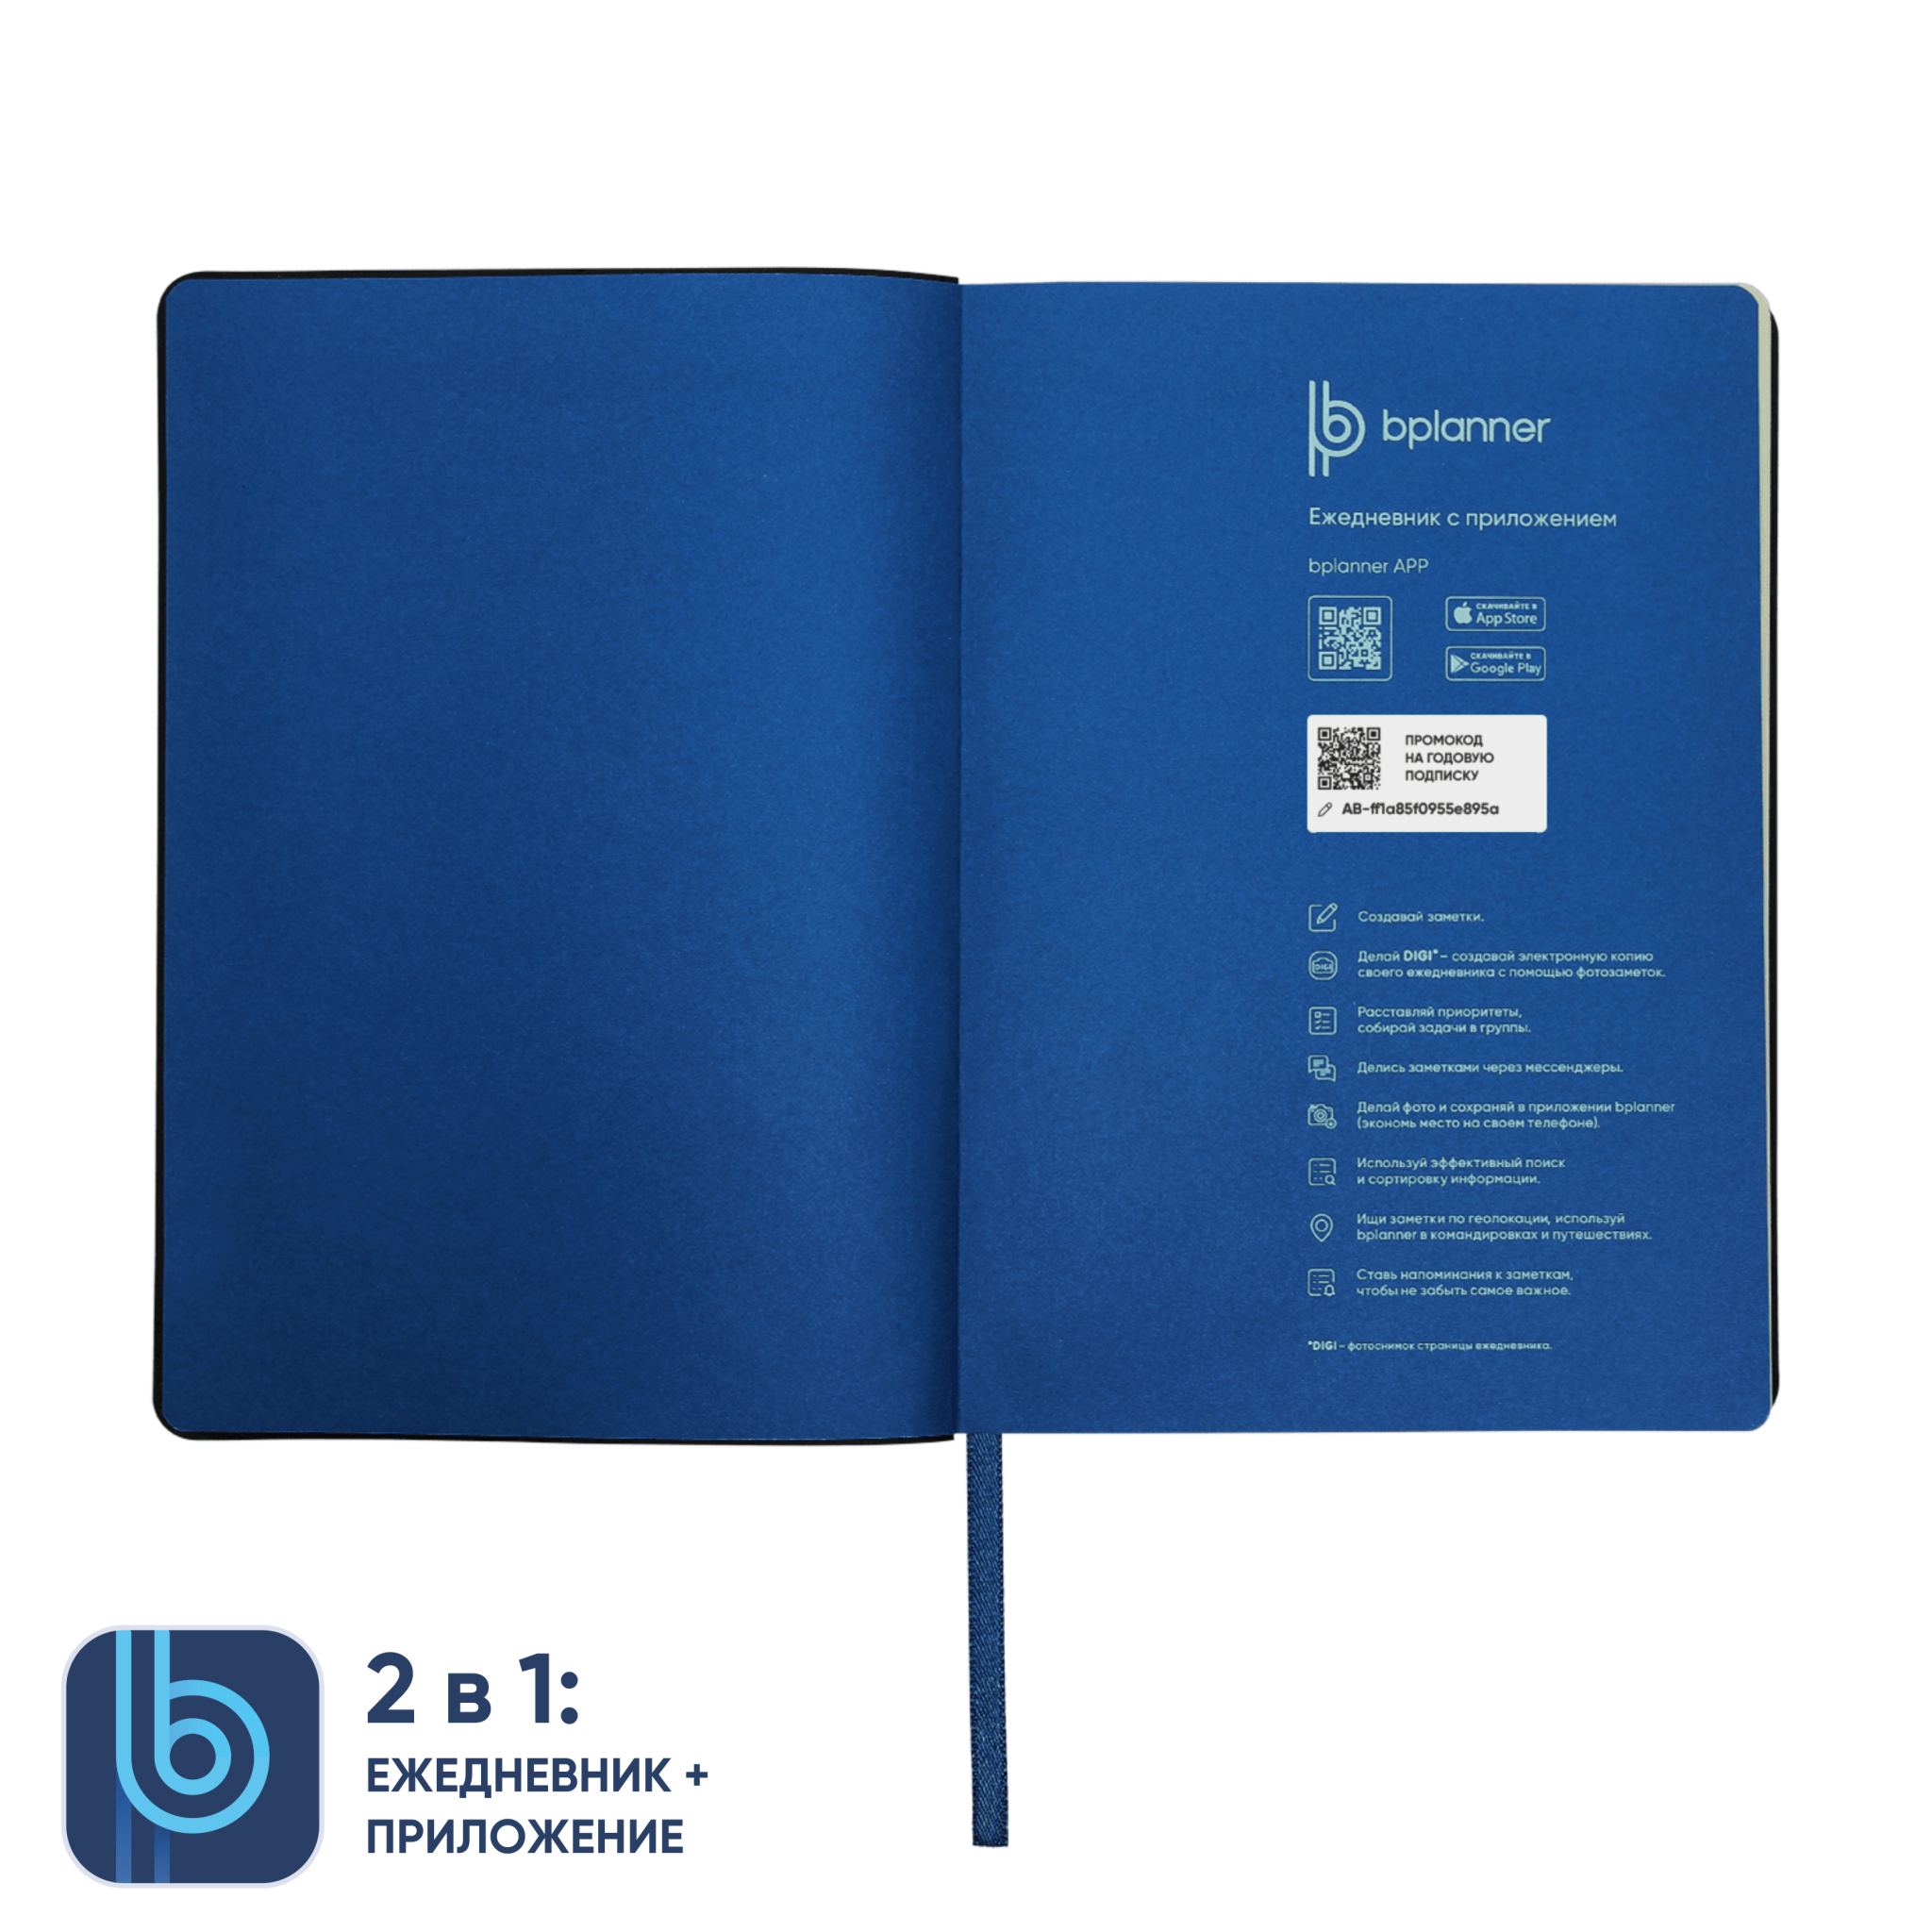 Ежедневник Bplanner.01 blue (синий), синий, картон